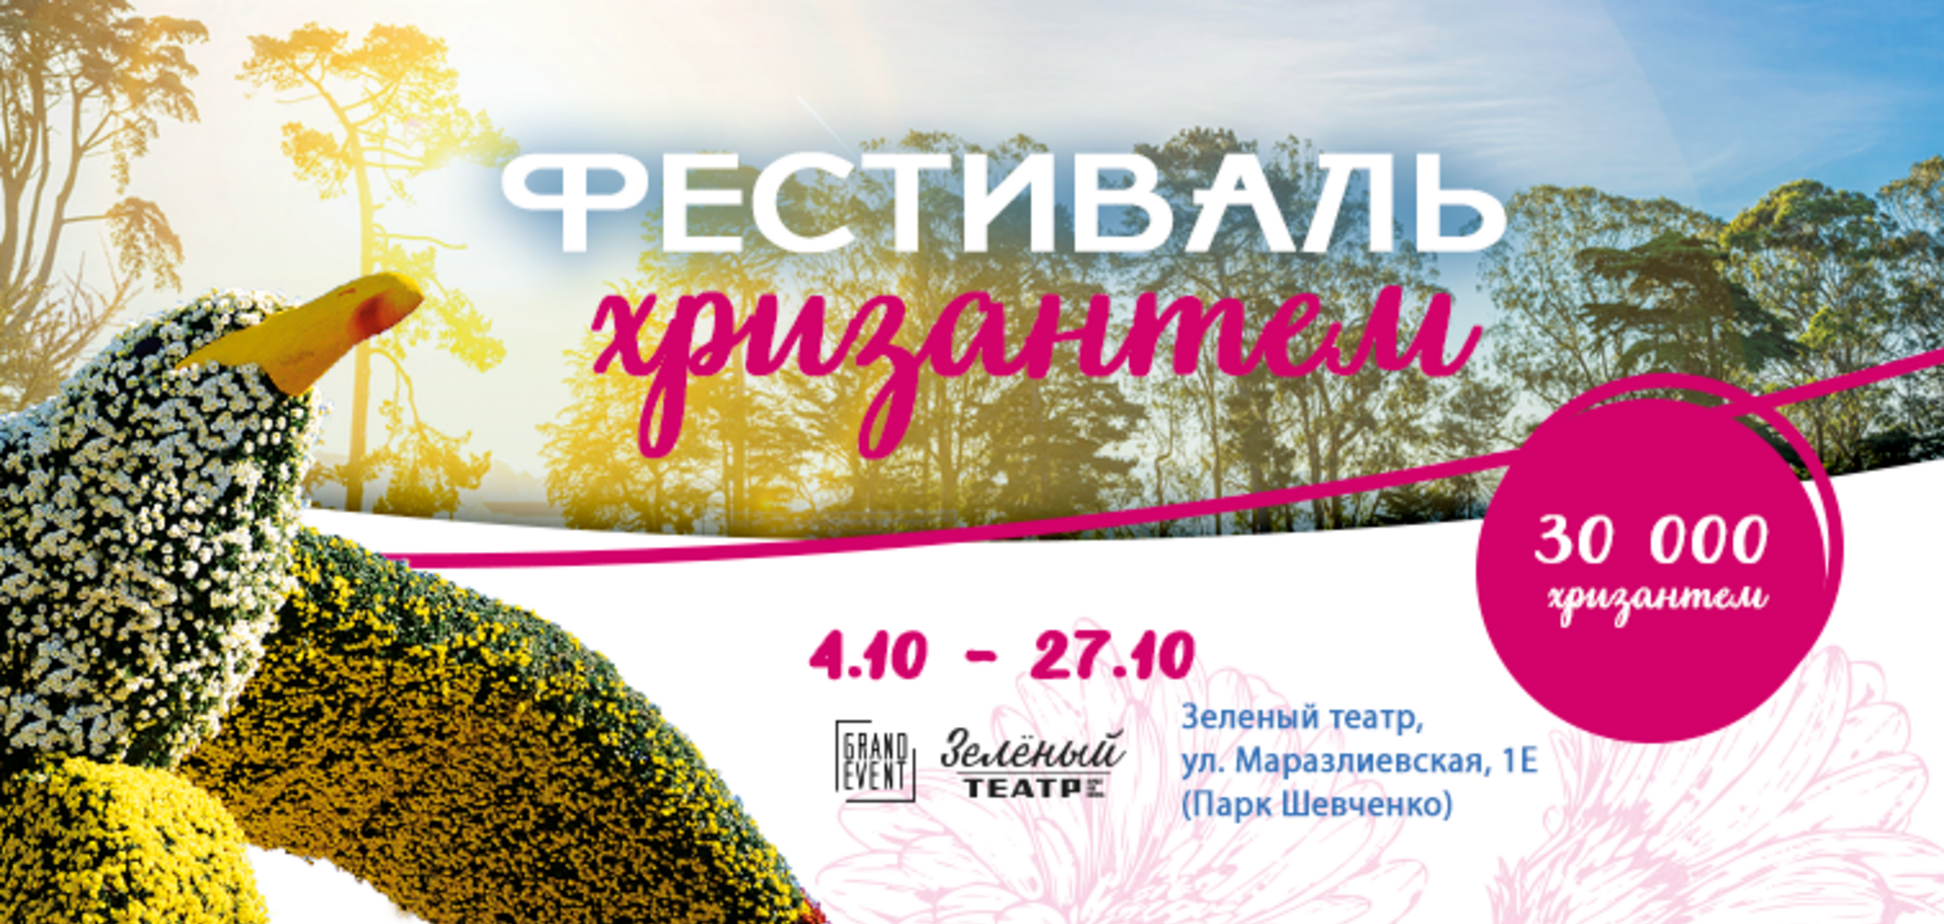 Морвокзал и Привоз из цветов: В Одессе впервые пройдет фестиваль хризантем